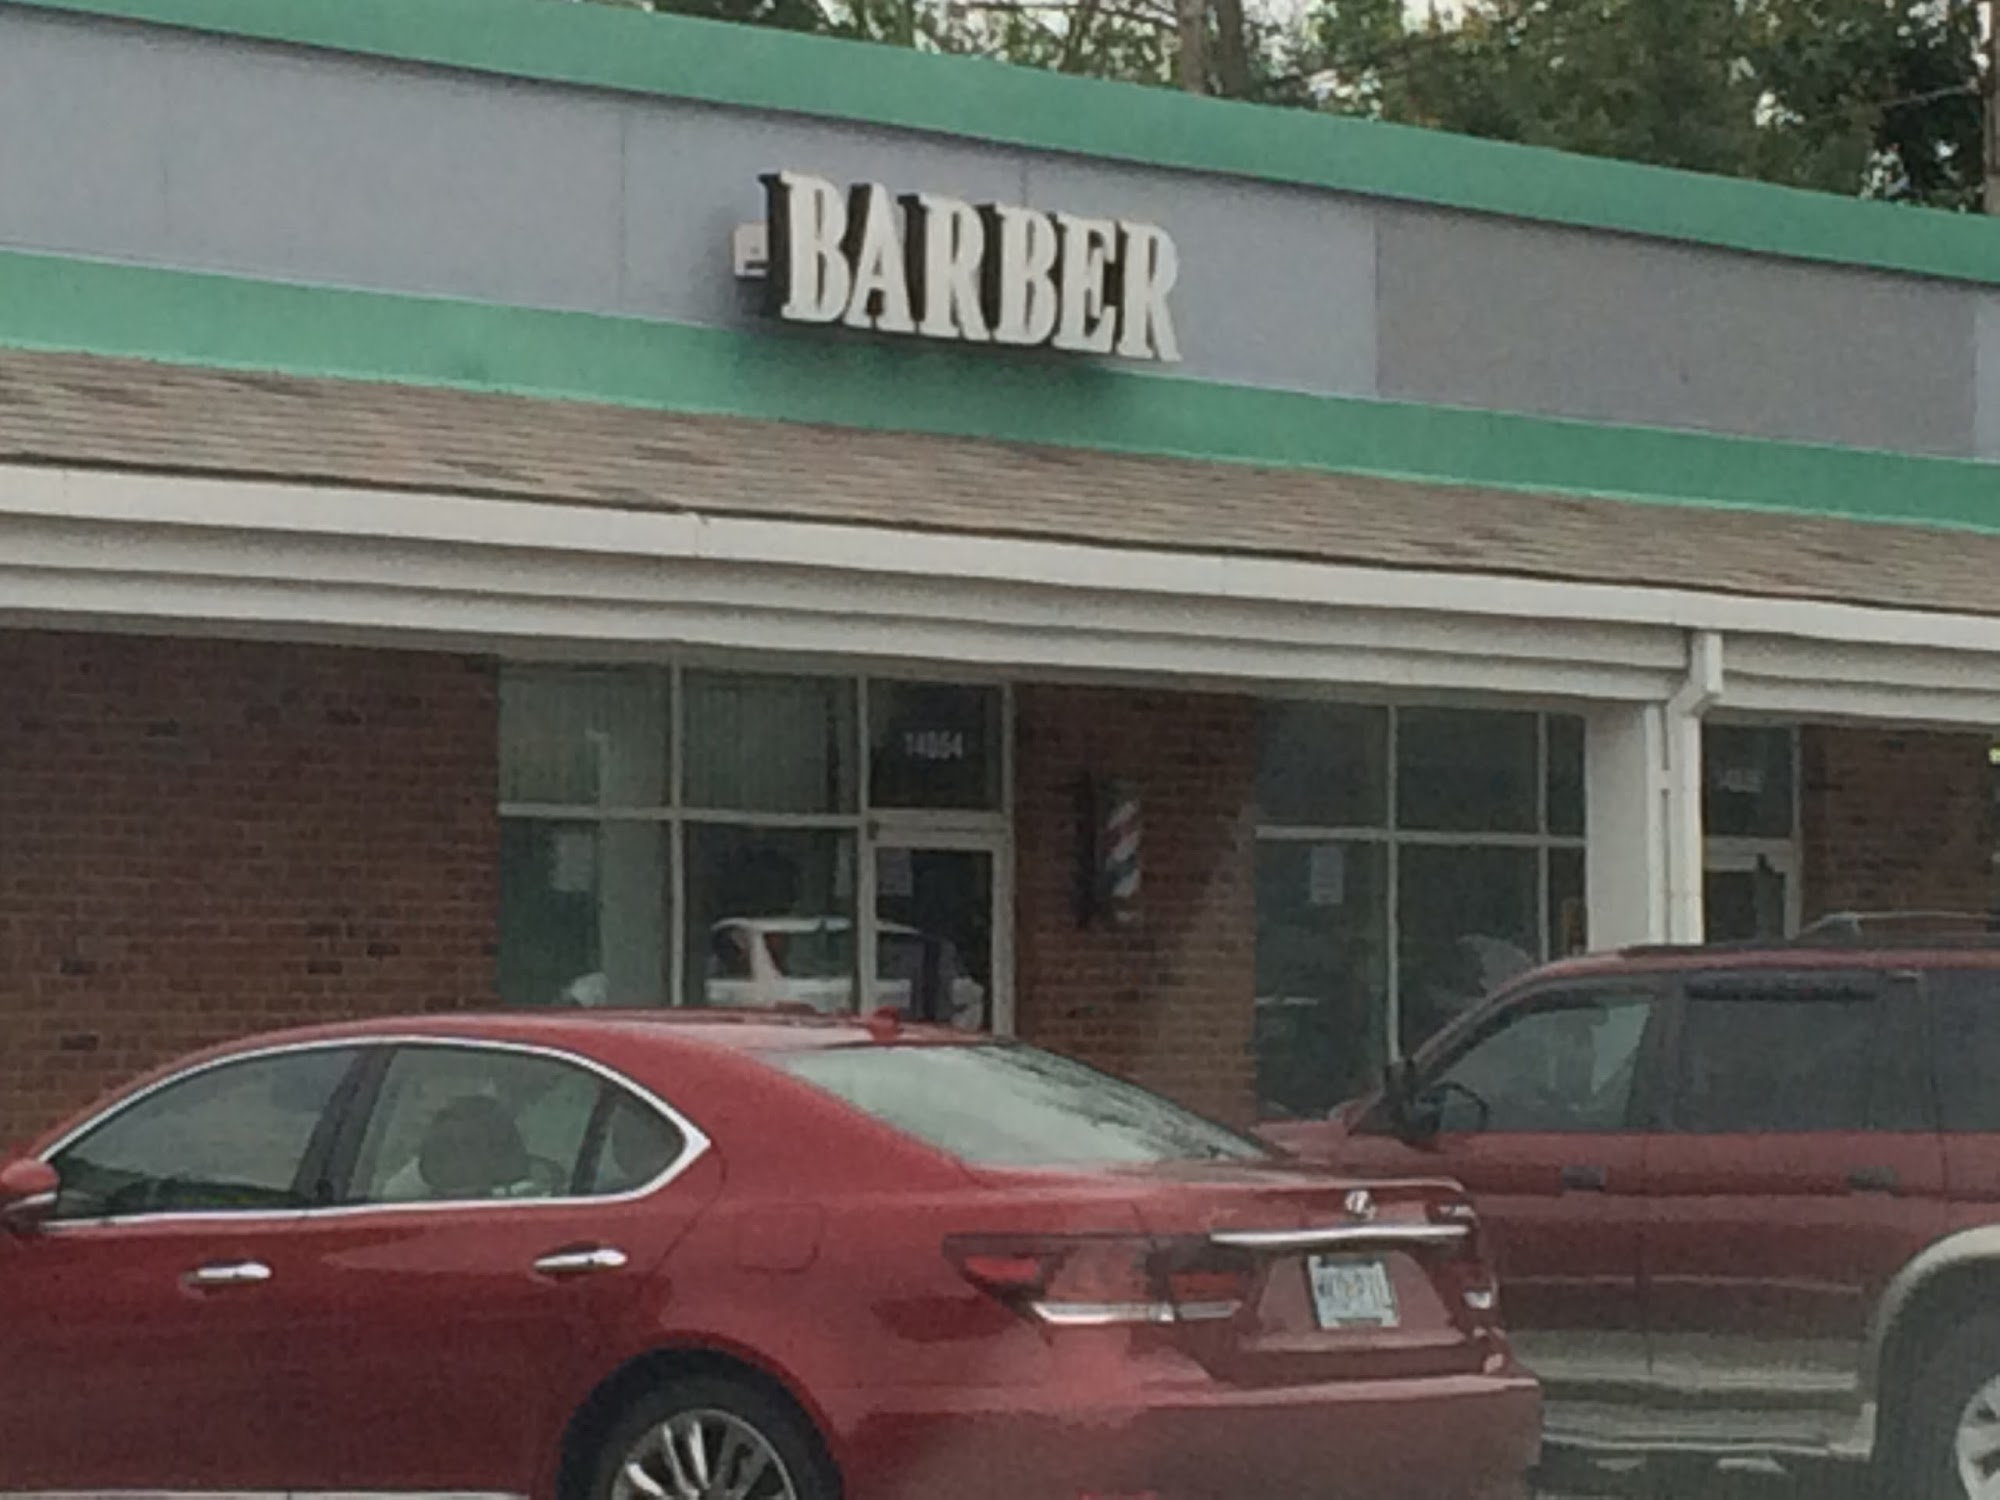 Wildwood Barber Shop